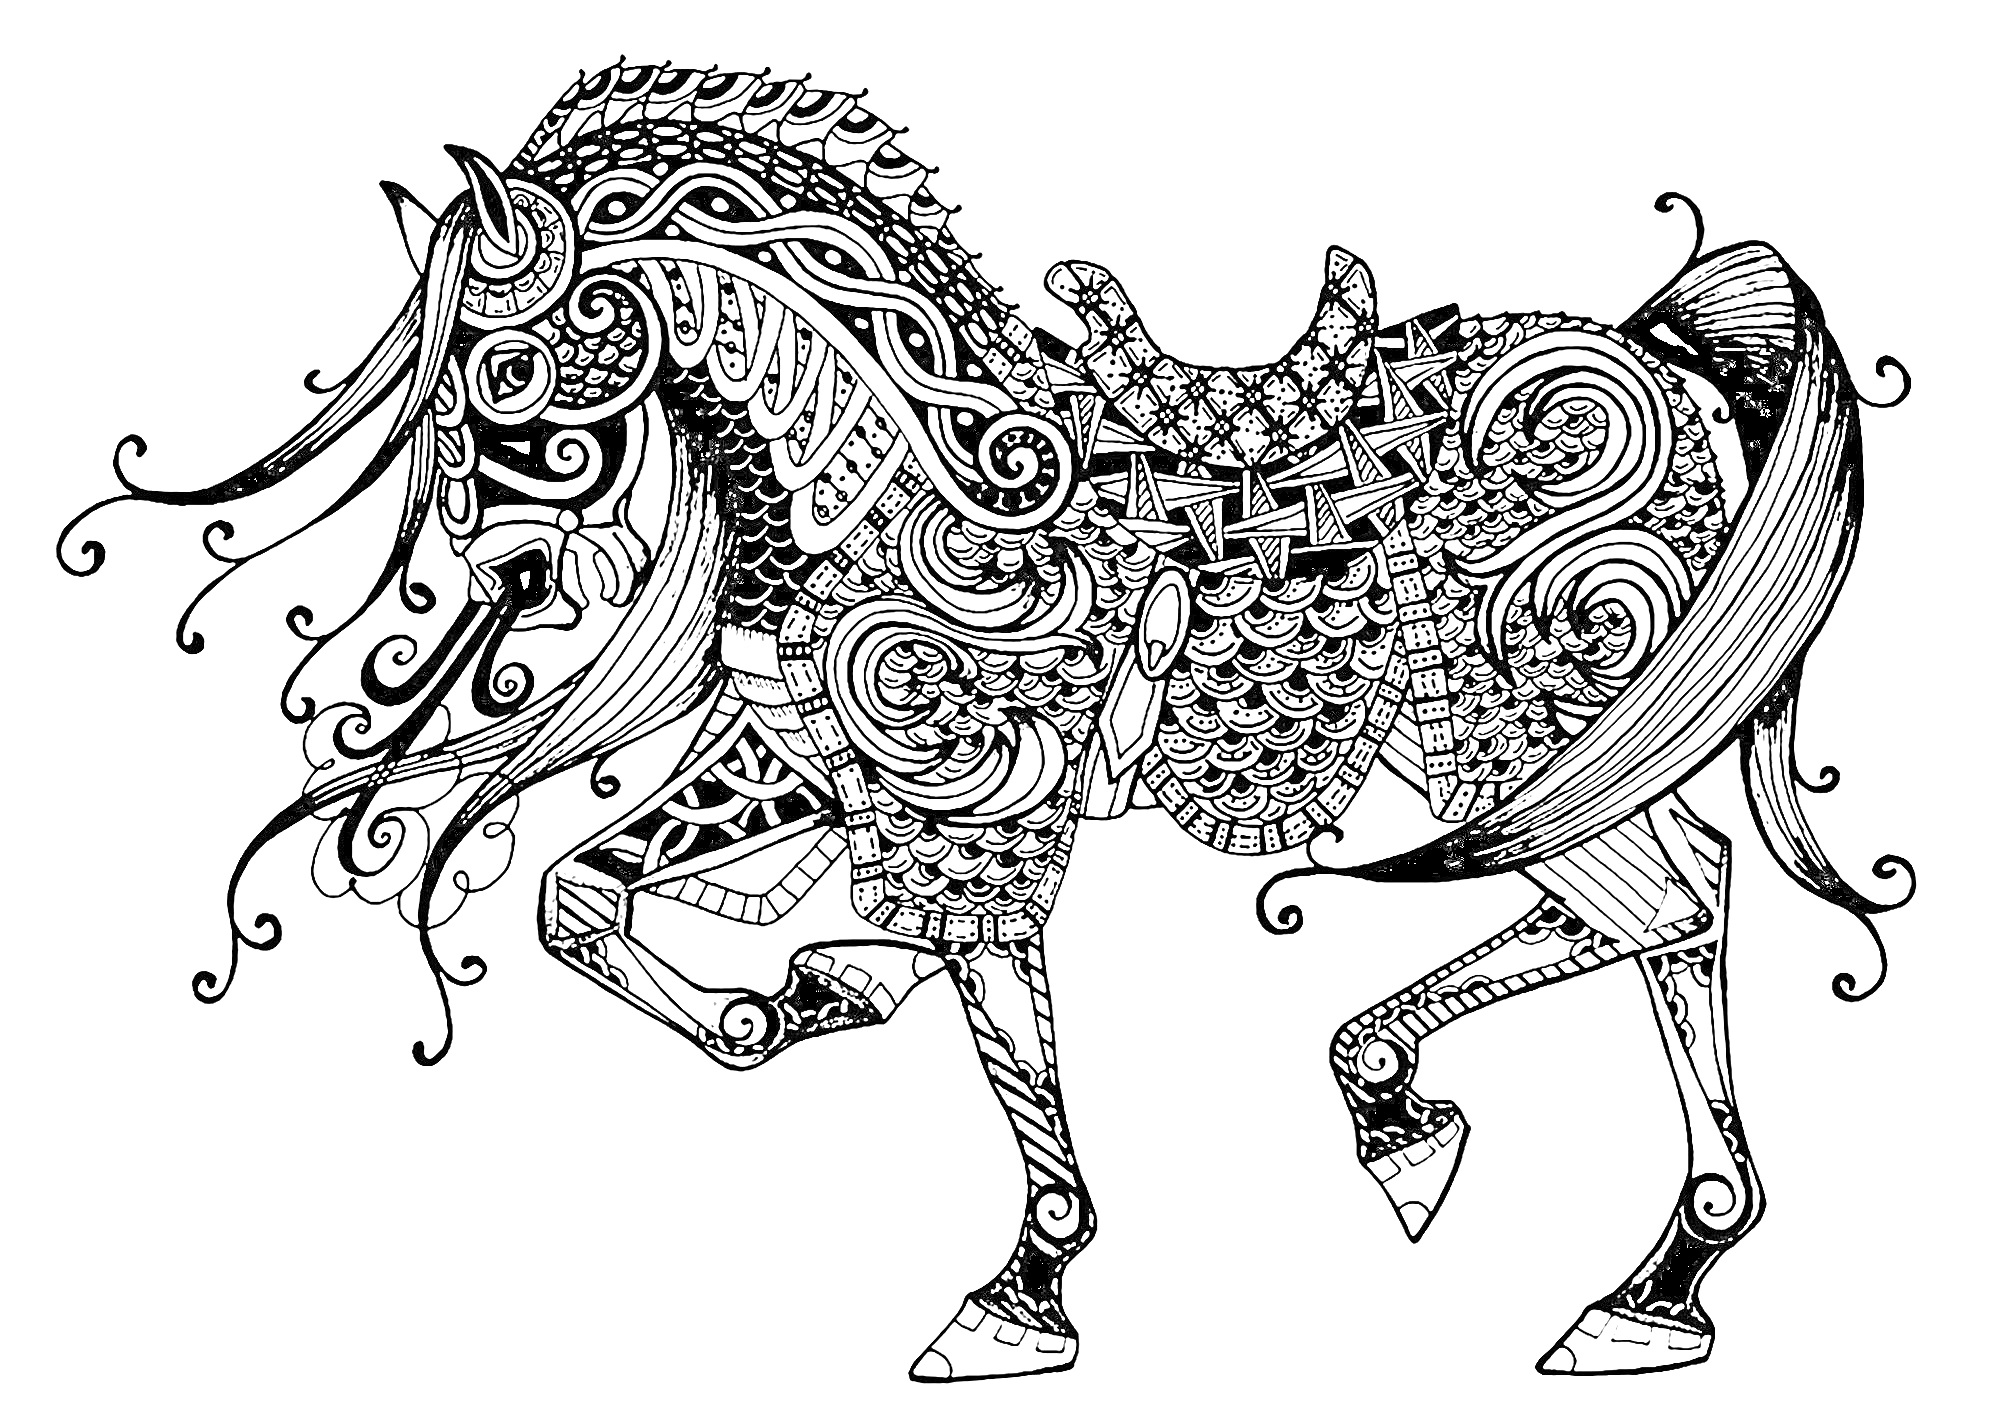 Антистресс раскраска с лошадью, украшенной сложными геометрическими и растительными узорами